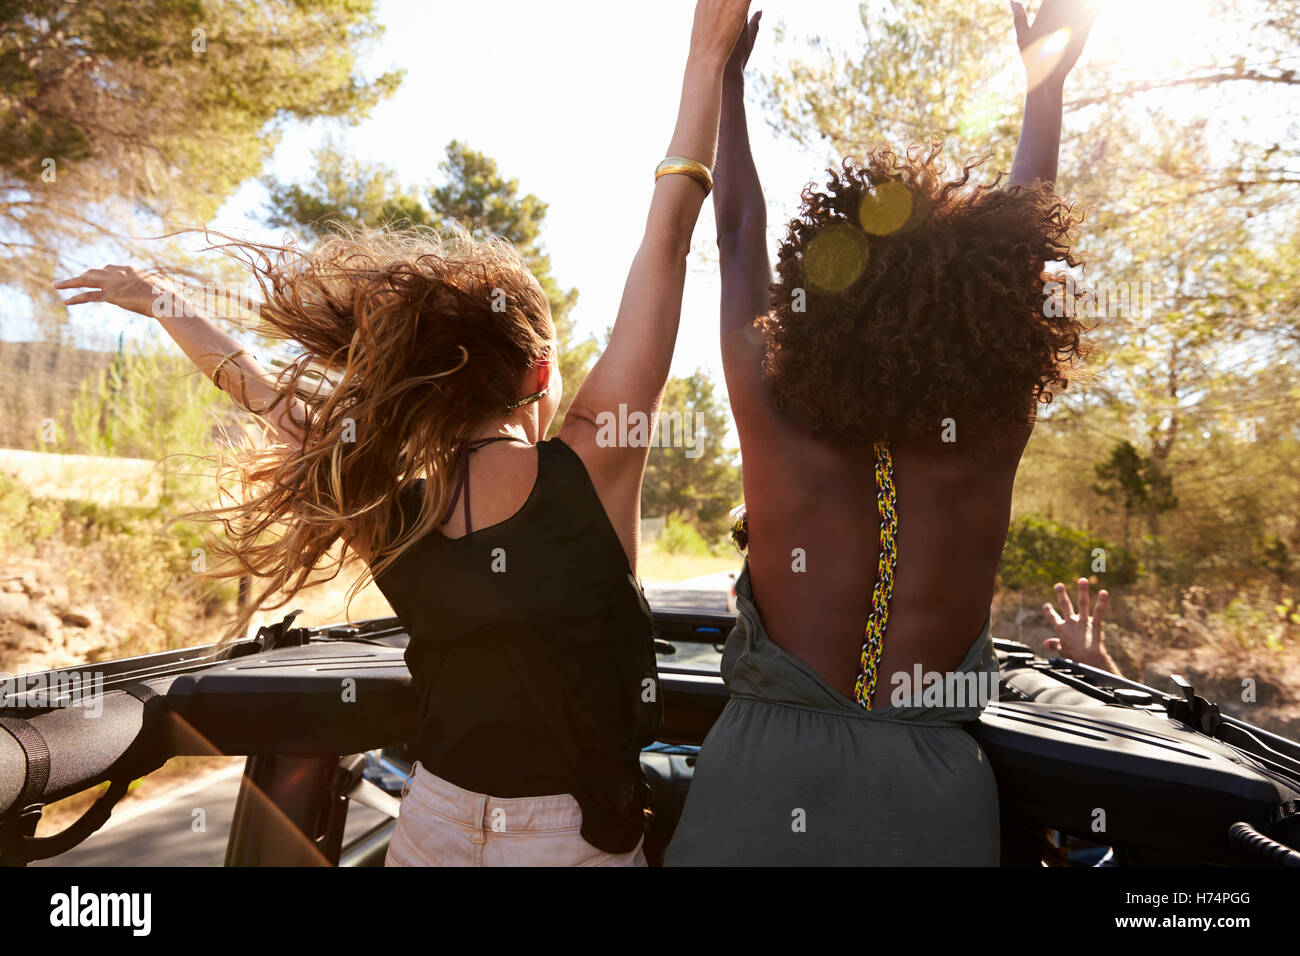 Les femmes sont deux excités à l'arrière de voiture ouverte, vue arrière Banque D'Images